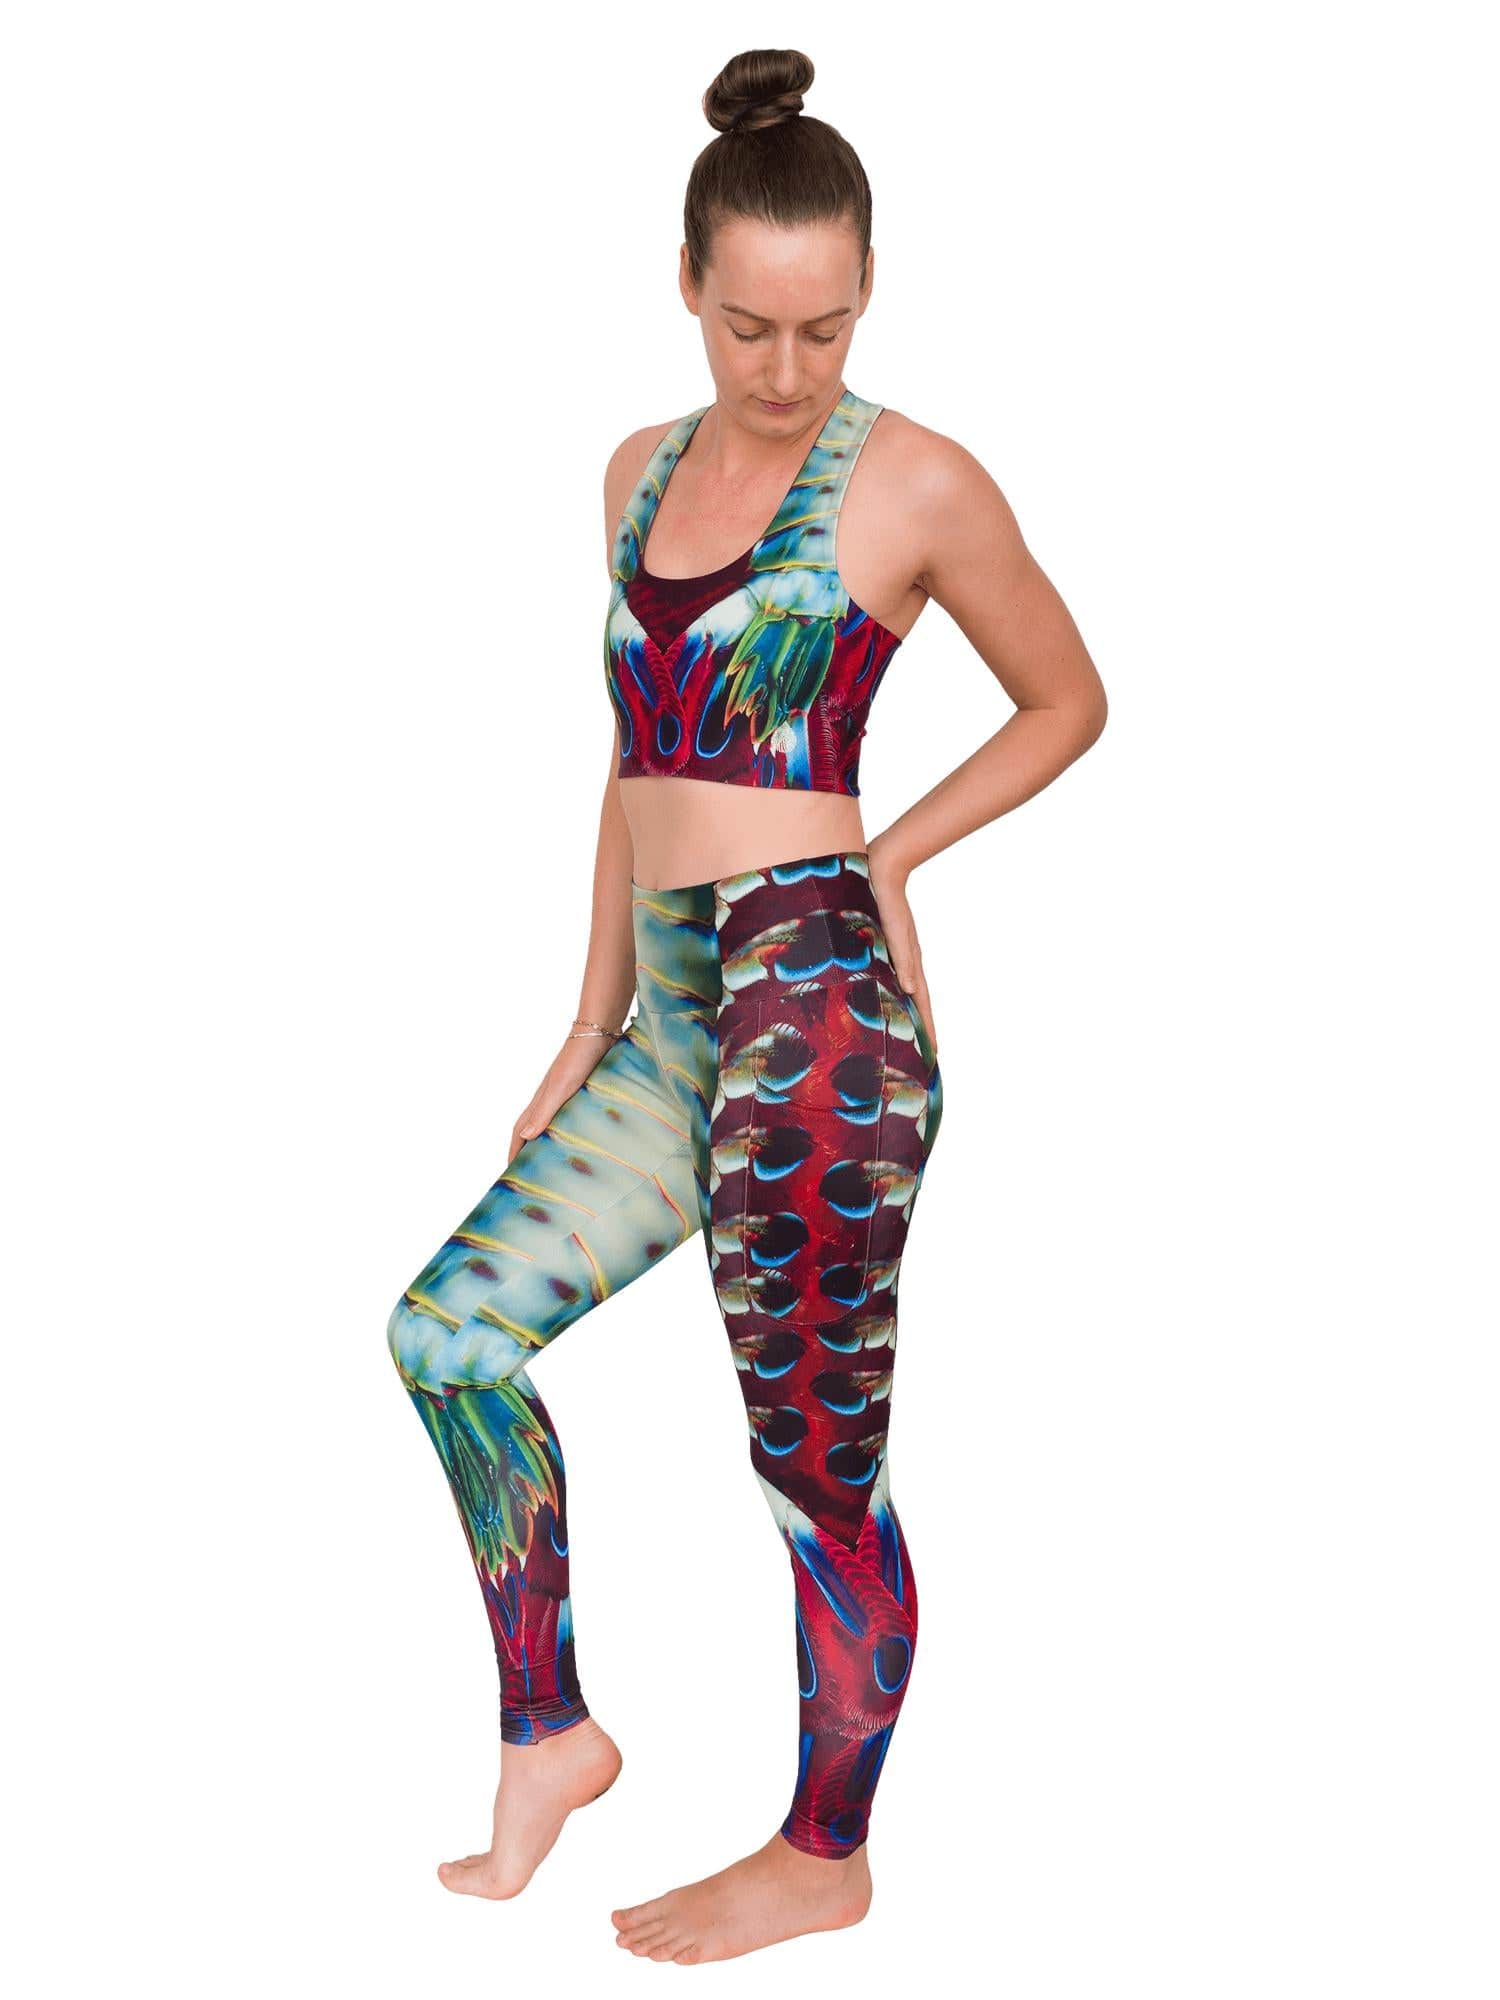 Shark Leggings Women, Marine Animal Navy Blue Printed Yoga Pants Graphic  Workout Running Gym Fun Designer Tights Gift